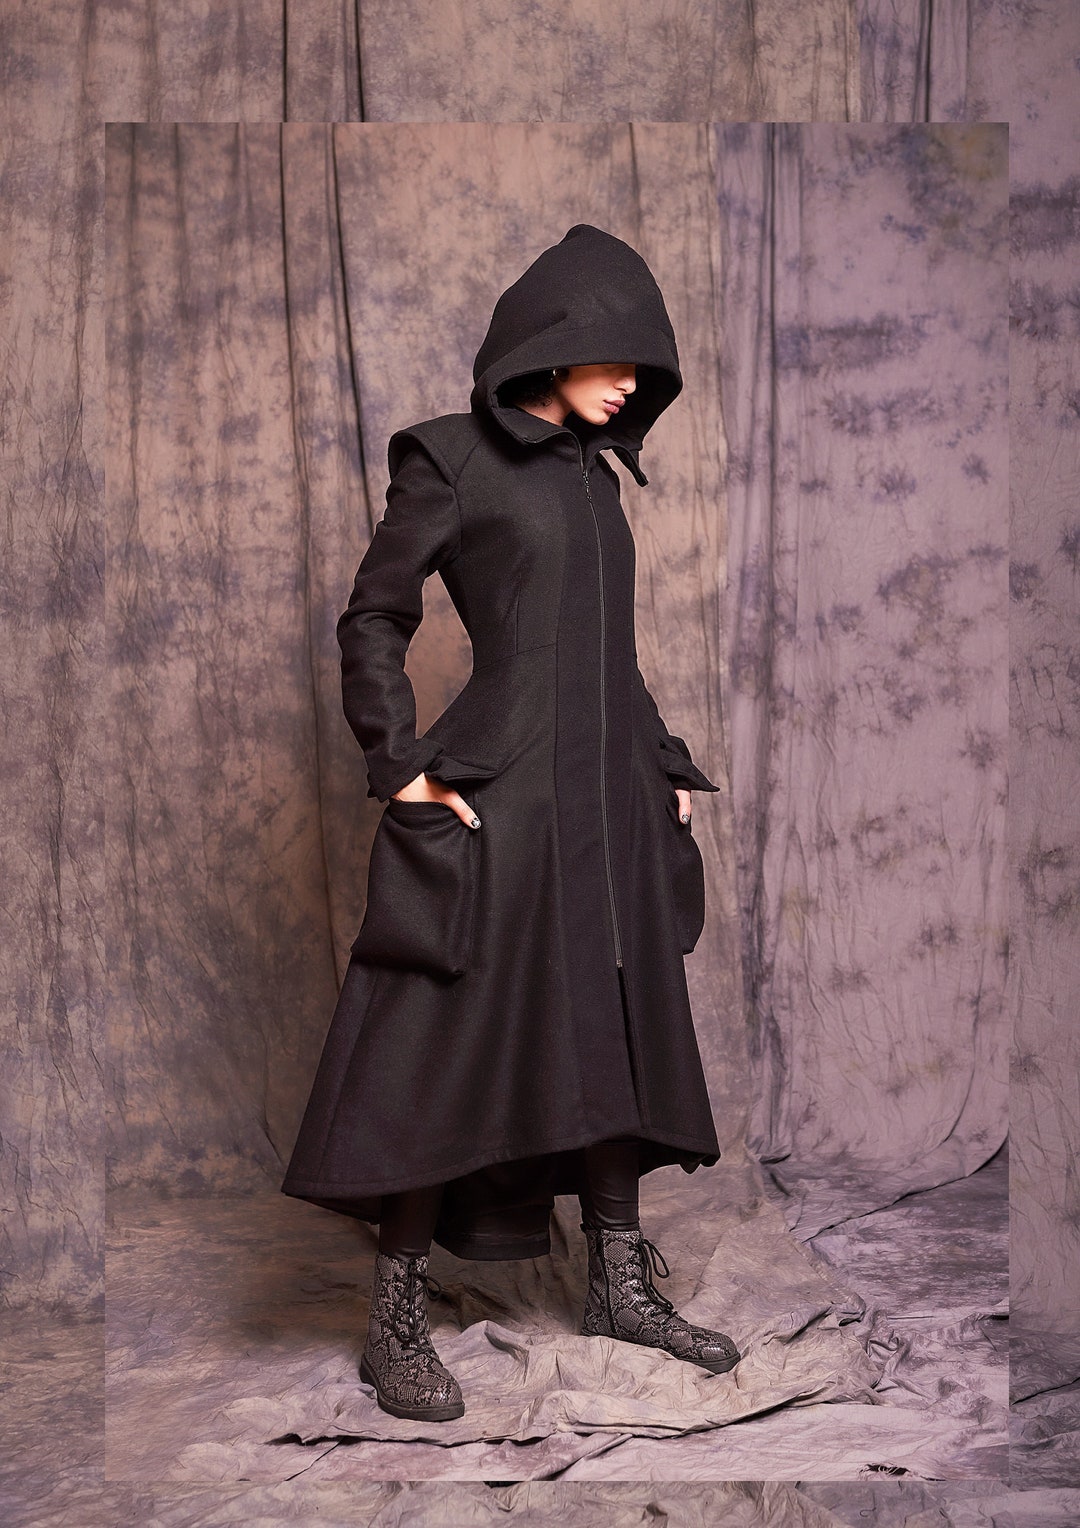 Sleeveless Hooded Monogram Teddy Jacket - Women - Ready-to-Wear